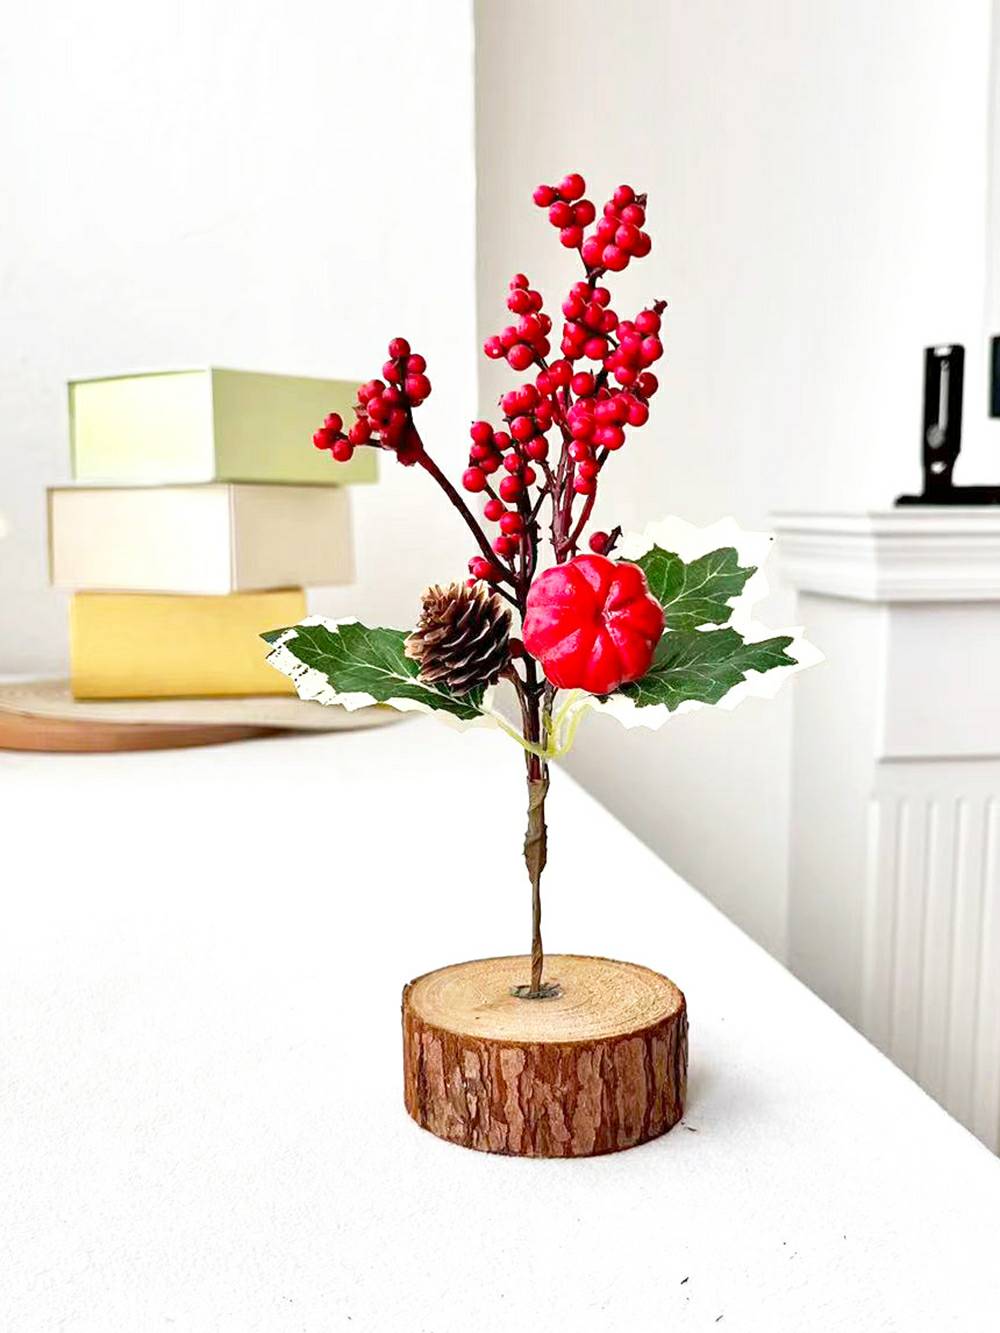 활 크리스마스 트리 장식이 있는 나무 그루터기 레드 베리 솔방울 가지